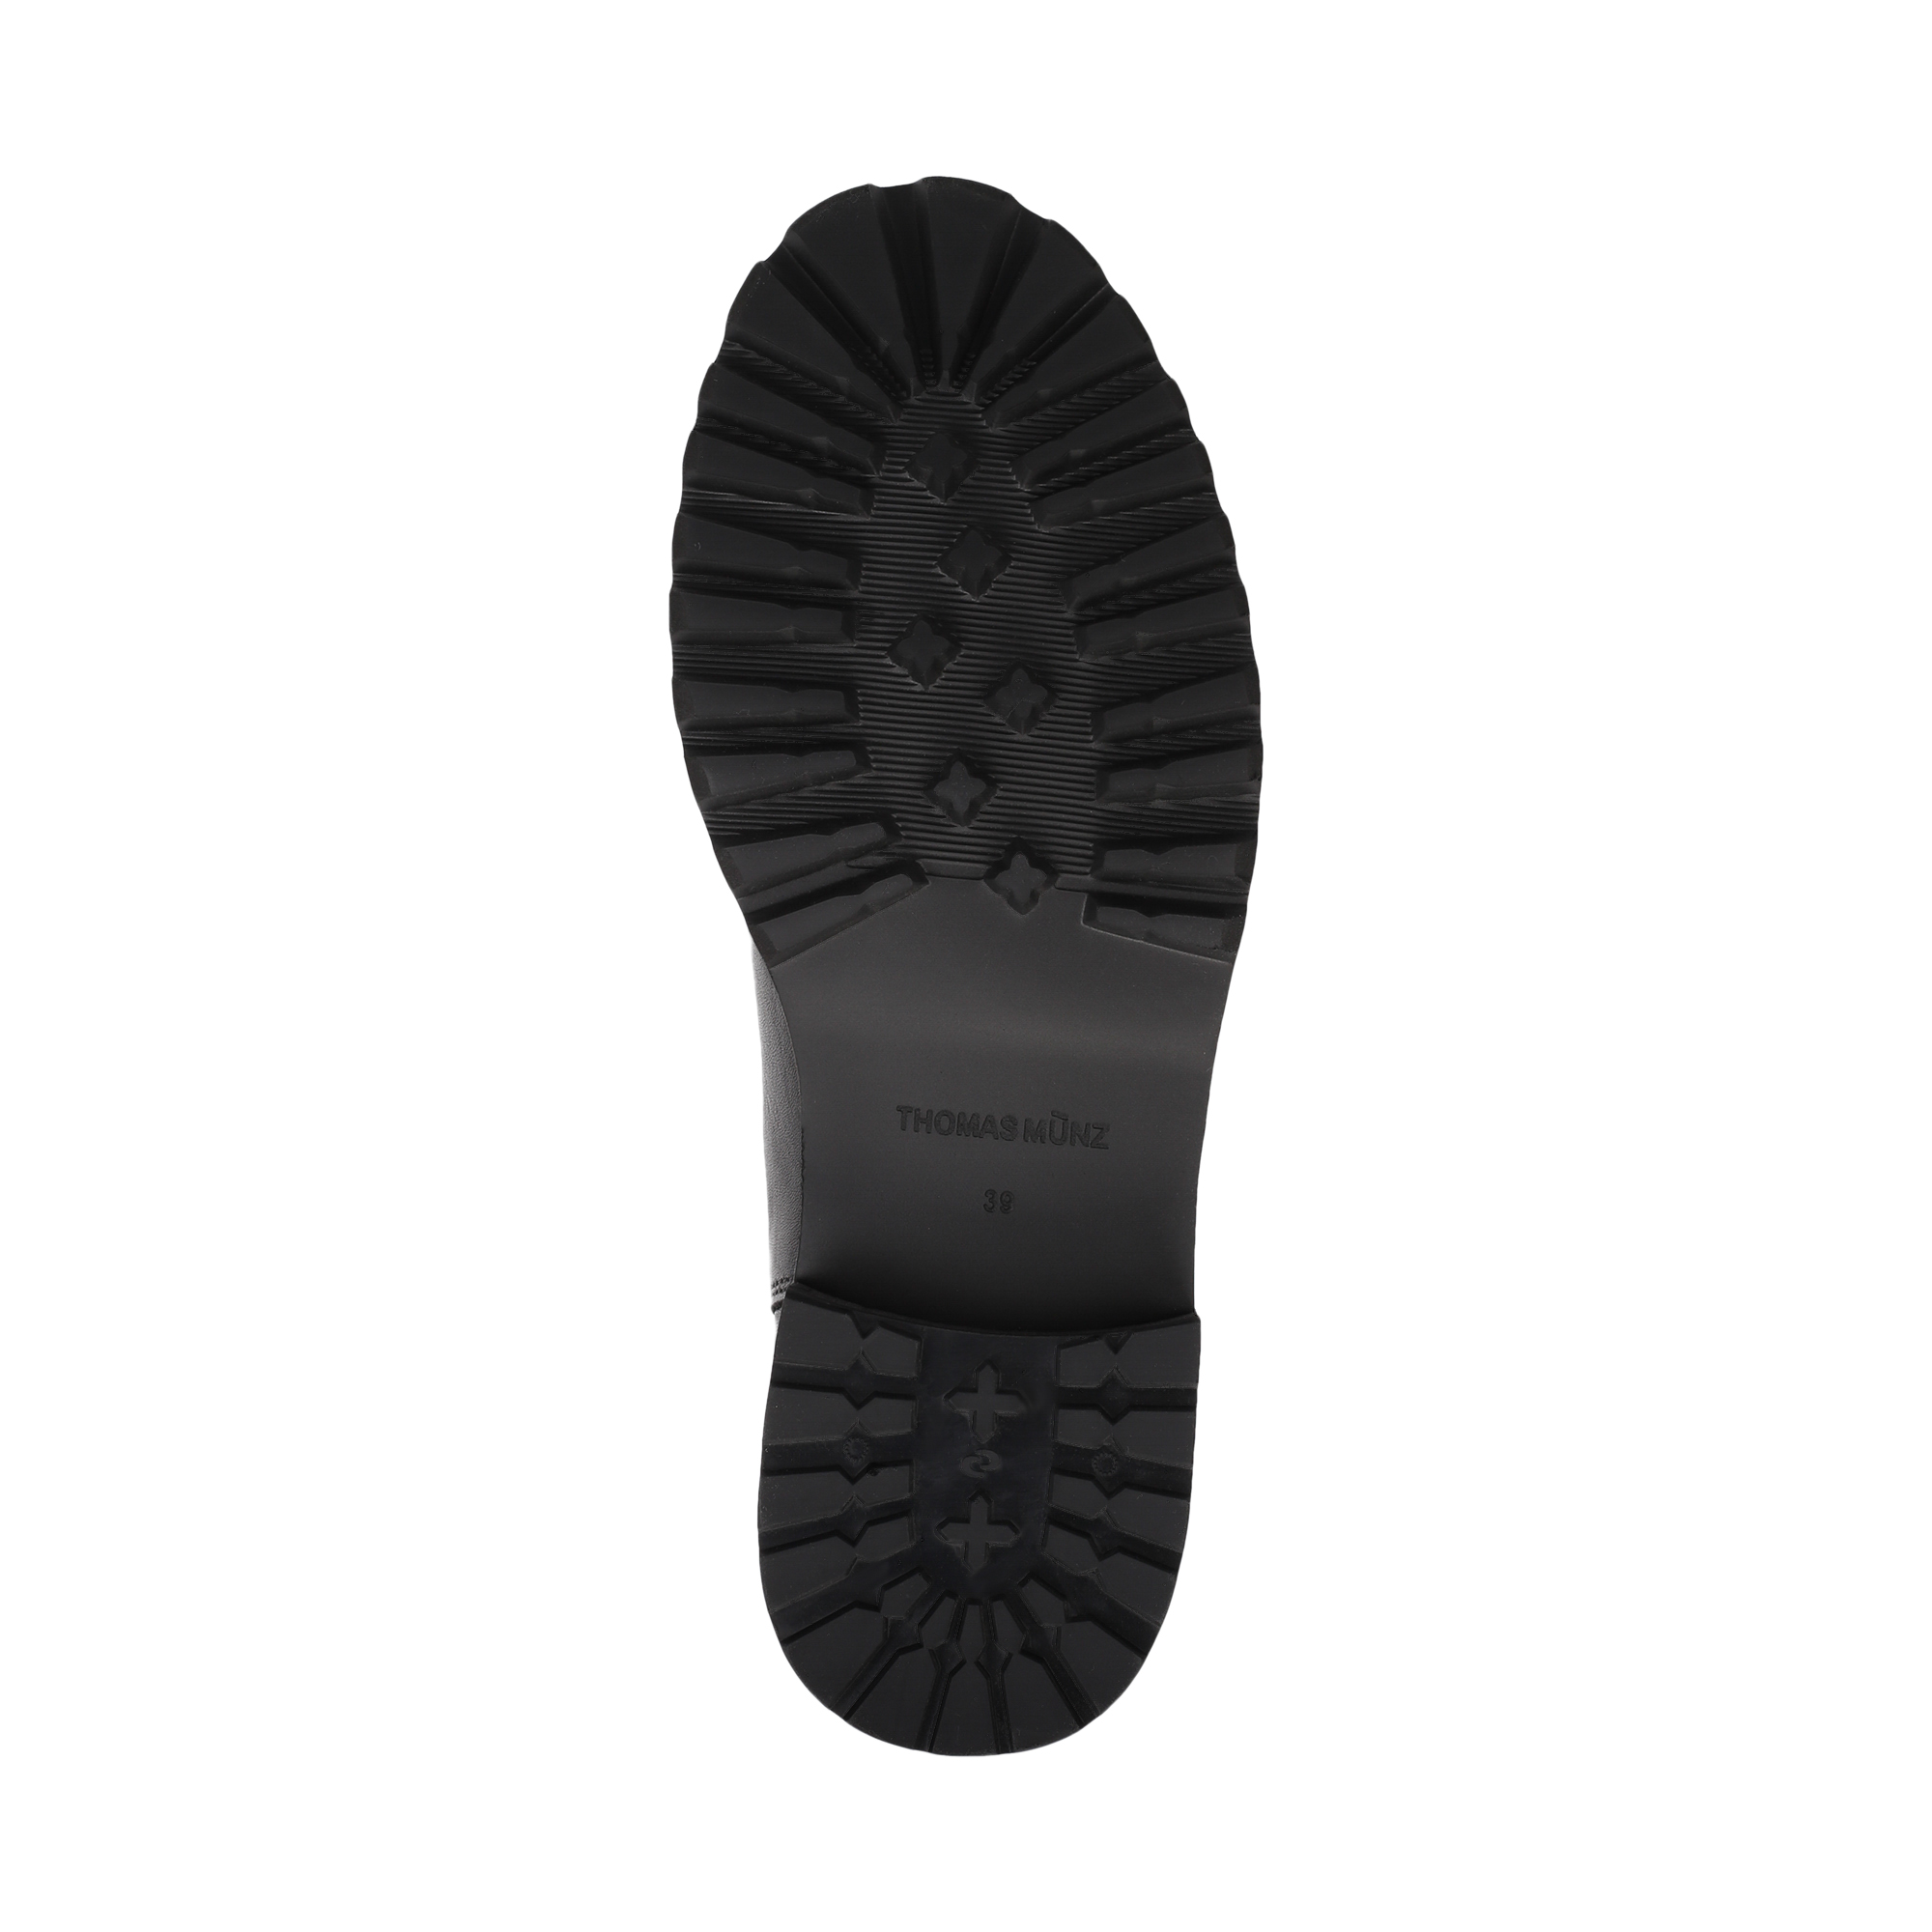 Ботинки Thomas Munz 058-3441A-2102, цвет черный, размер 37 - фото 4